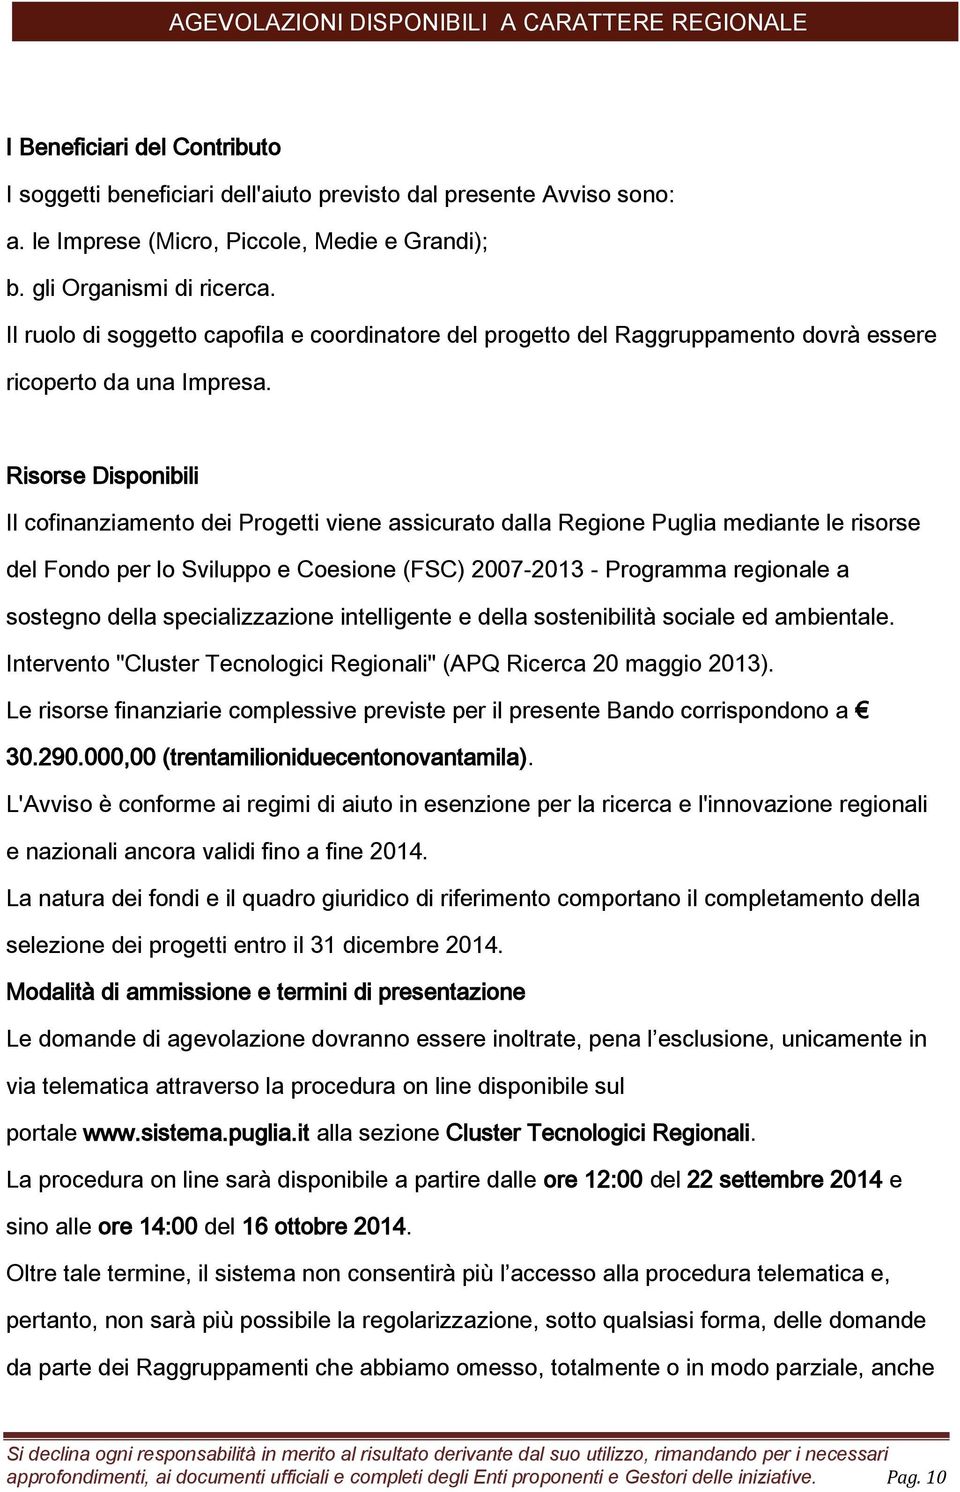 Risorse Disponibili Il cofinanziamento dei Progetti viene assicurato dalla Regione Puglia mediante le risorse del Fondo per lo Sviluppo e Coesione (FSC) 2007-2013 - Programma regionale a sostegno